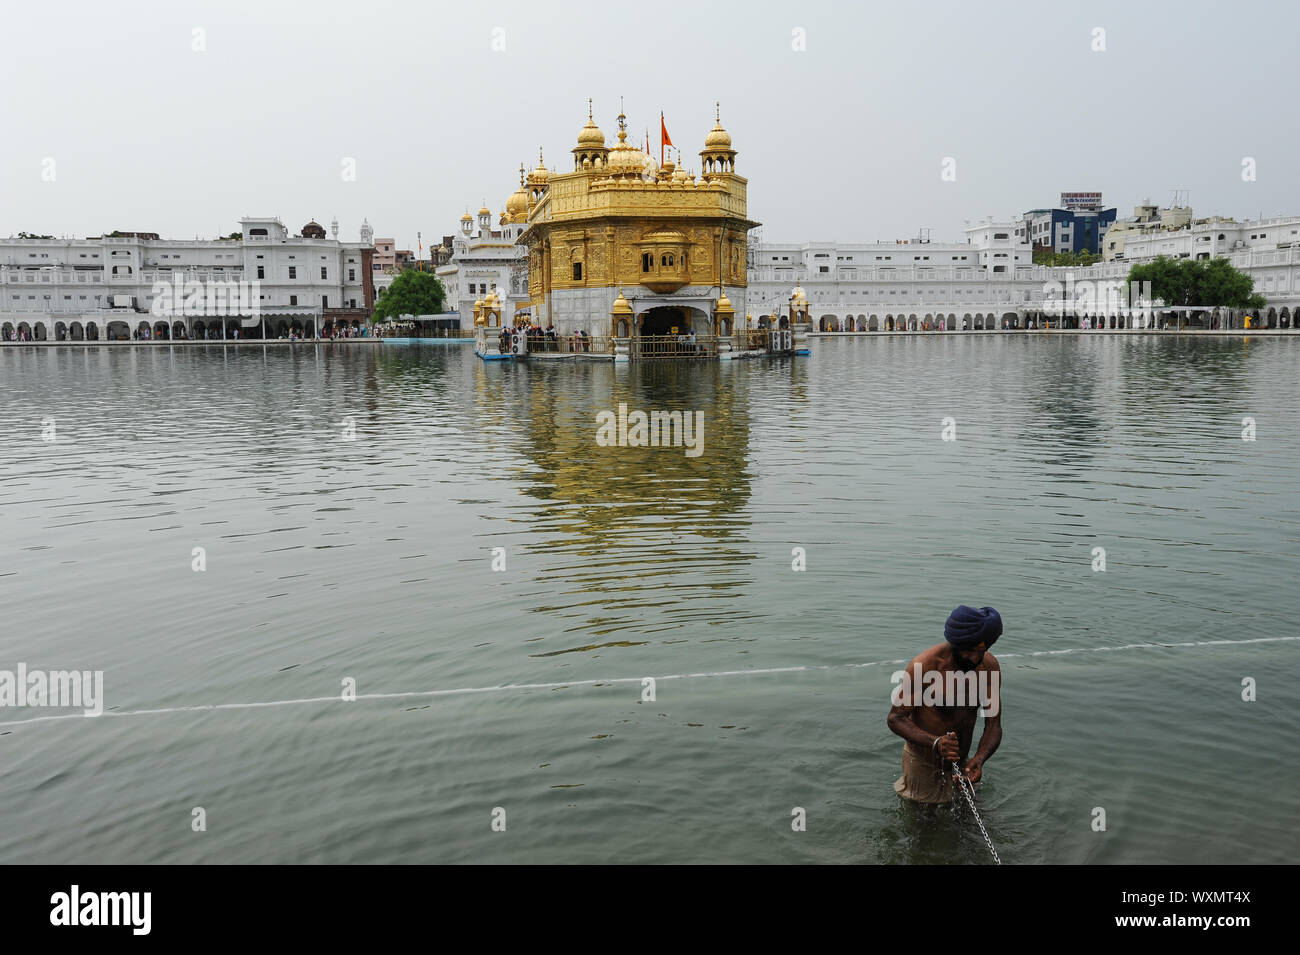 22.07.2011, Amritsar, Punjab, India - un dévot Sikh Amrit la baigne dans Sarover (bassin sacré) au temple d'Or, le plus sacré des lieux de culte. Banque D'Images